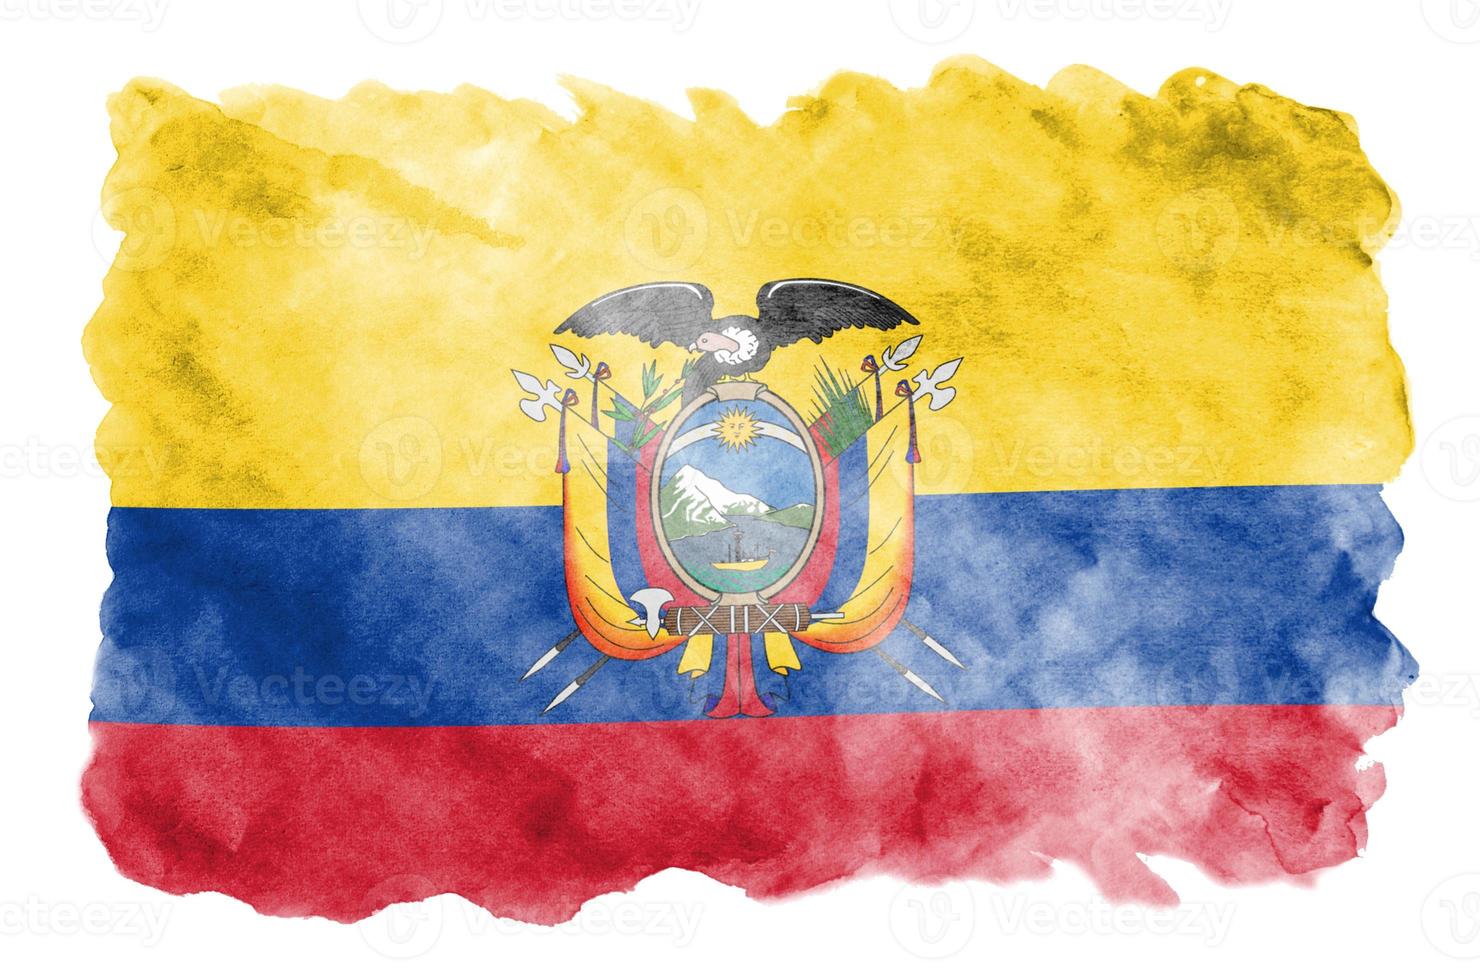 bandeira do equador é retratada em estilo aquarela líquido isolado no fundo branco foto